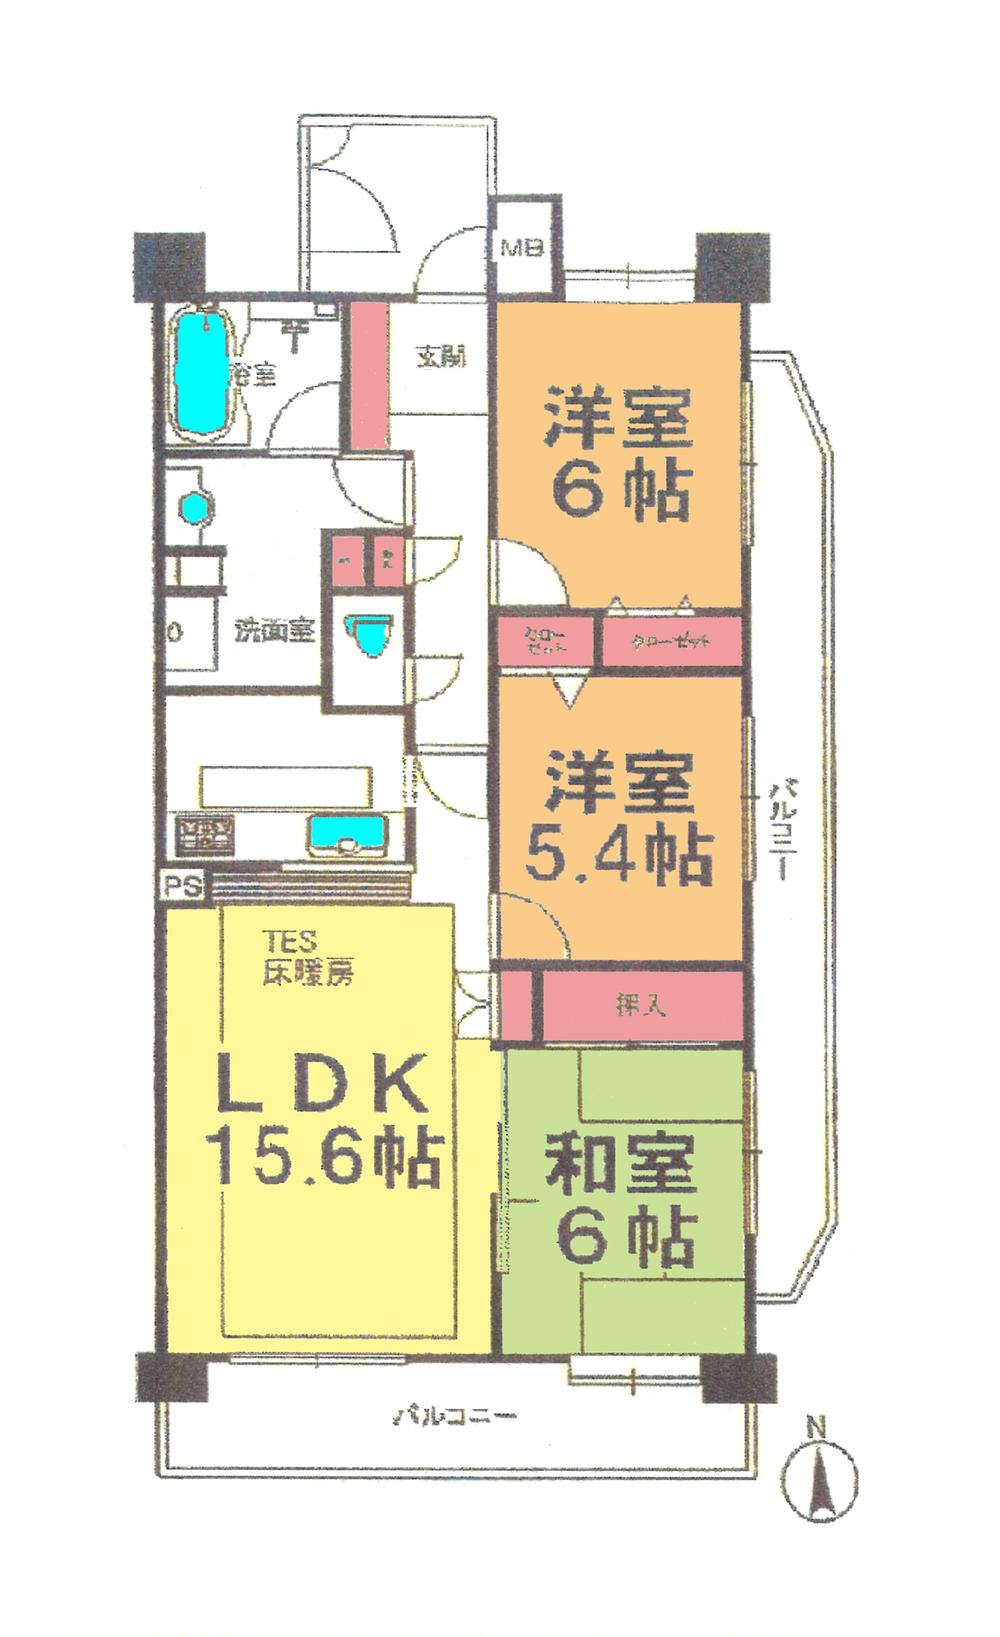 Floor plan. 3LDK, Price 26,800,000 yen, Occupied area 73.78 sq m , Balcony area 19.69 sq m floor plan